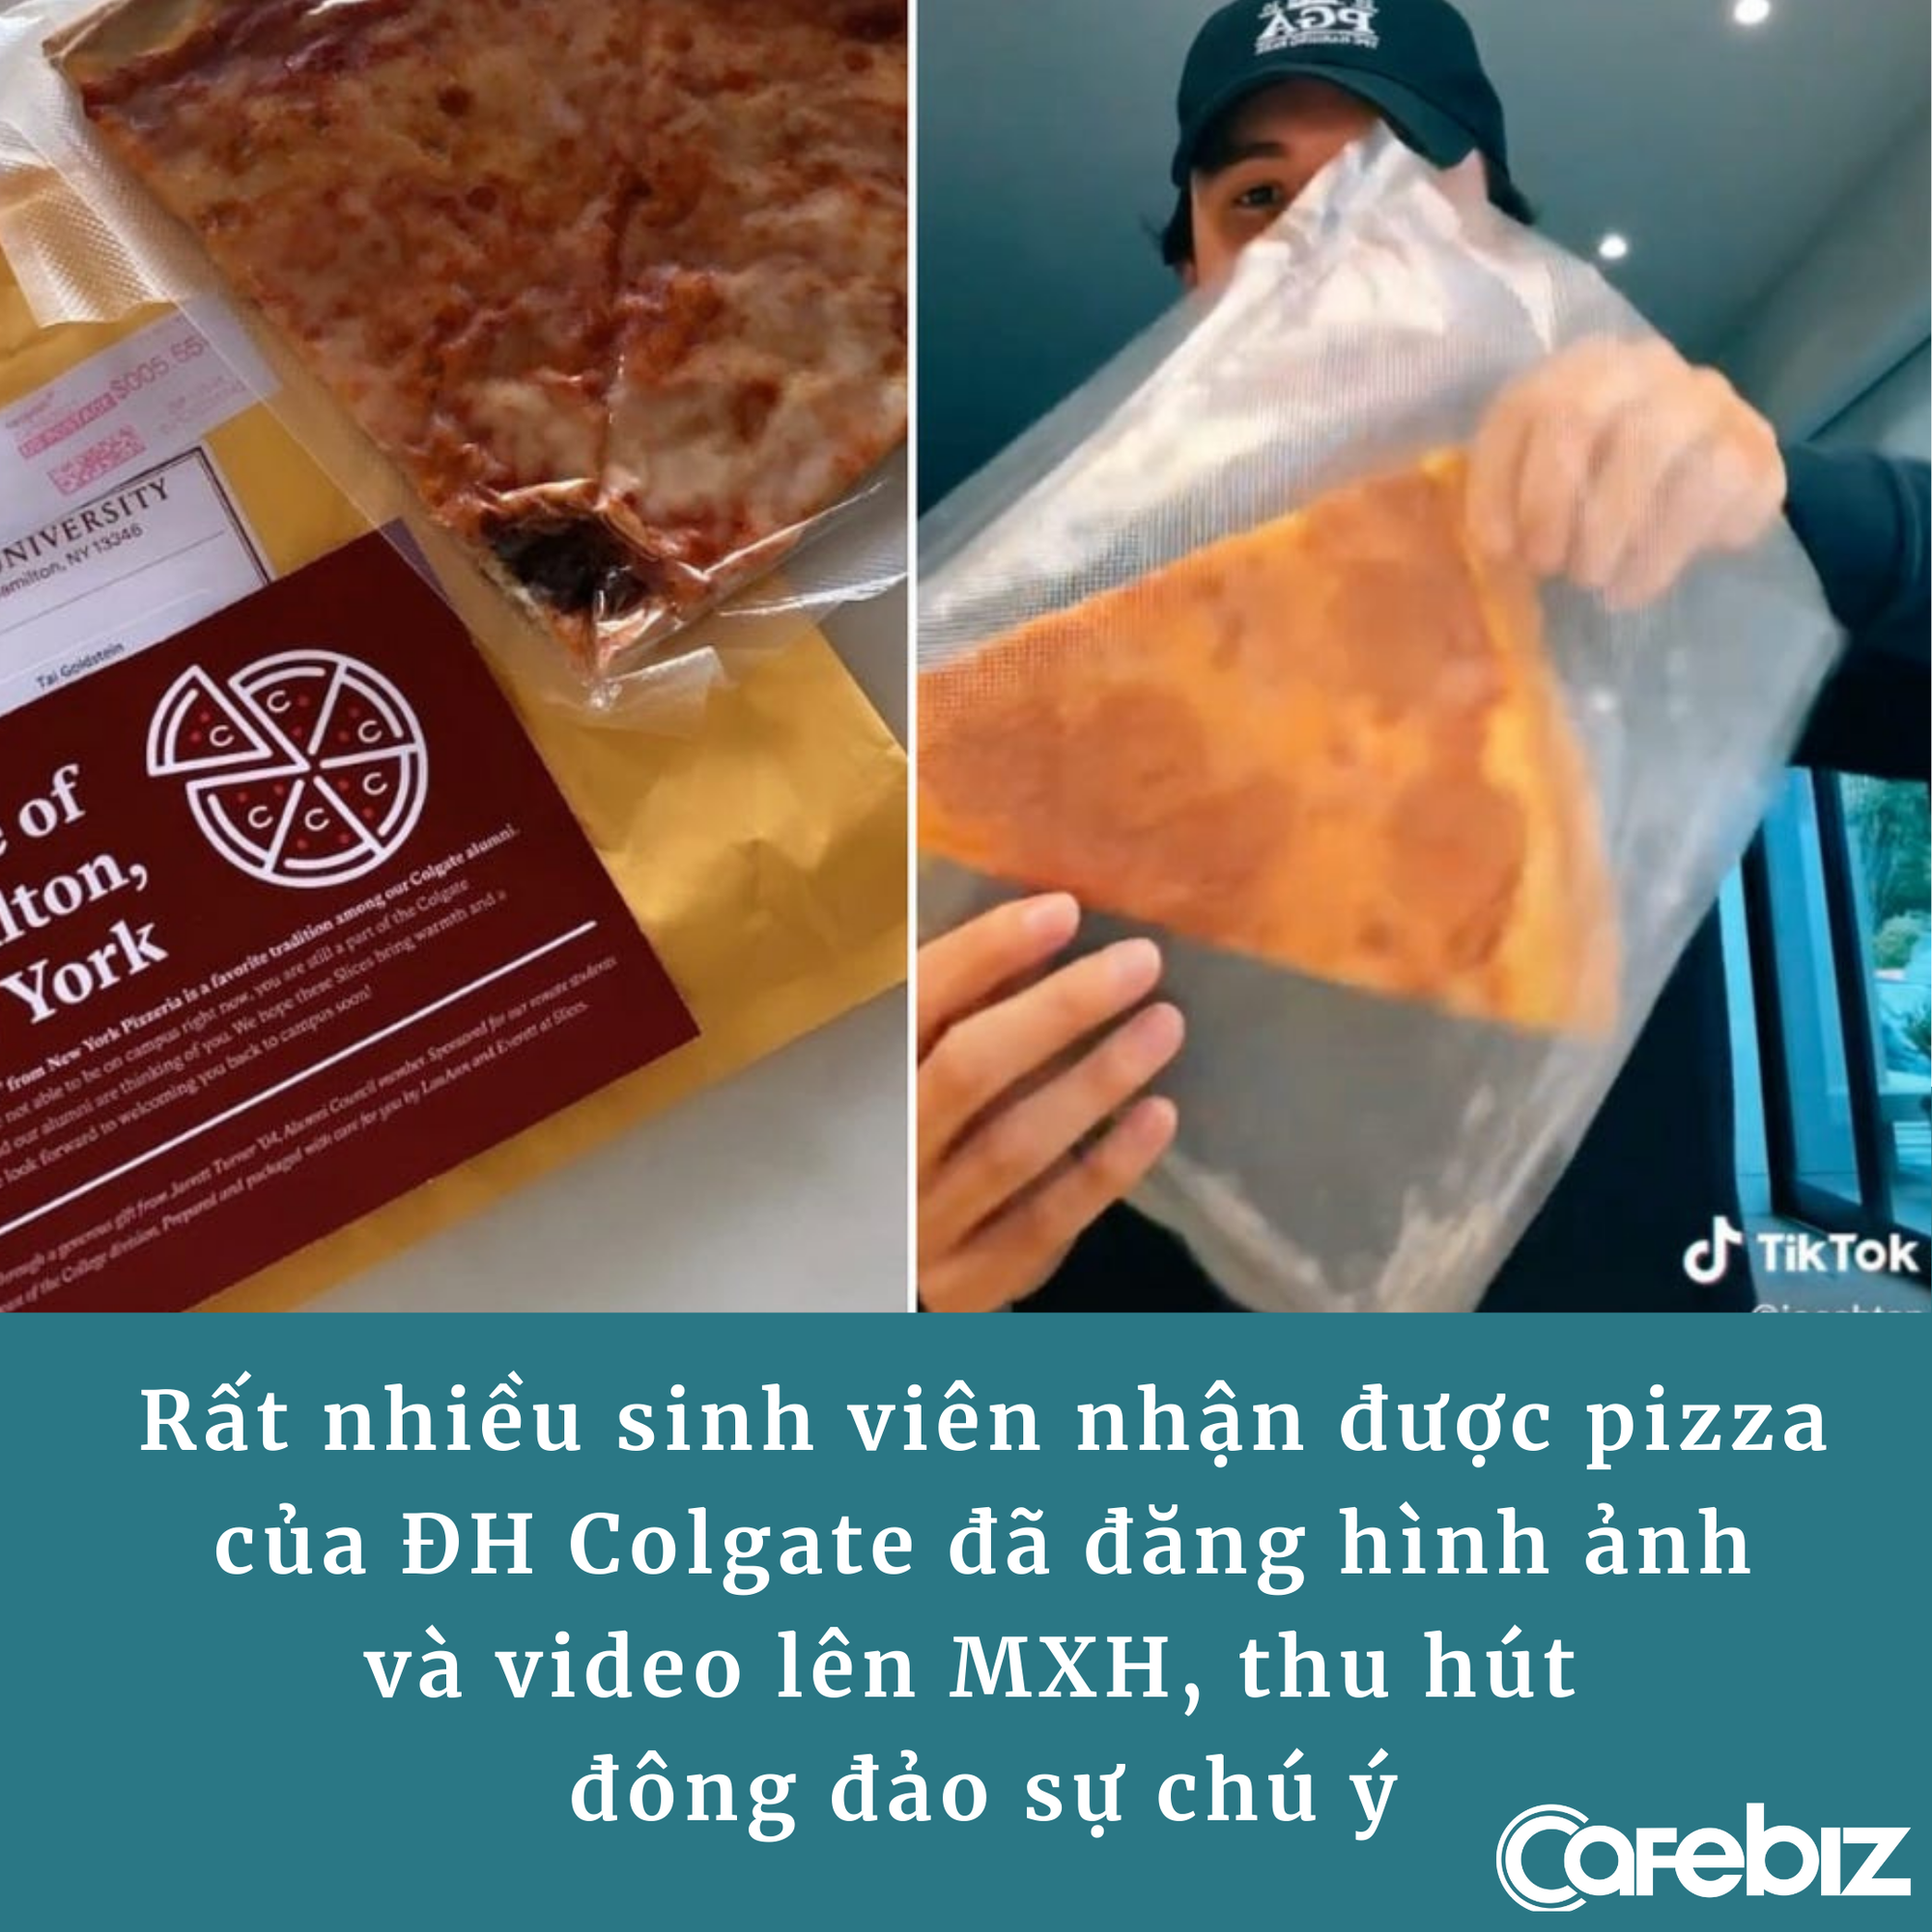 ‘Mưu đồ’ marketing thắng lớn của một trường đại học: Ship pizza đến tận nhà sinh viên học online qua đường bưu điện - Ảnh 1.